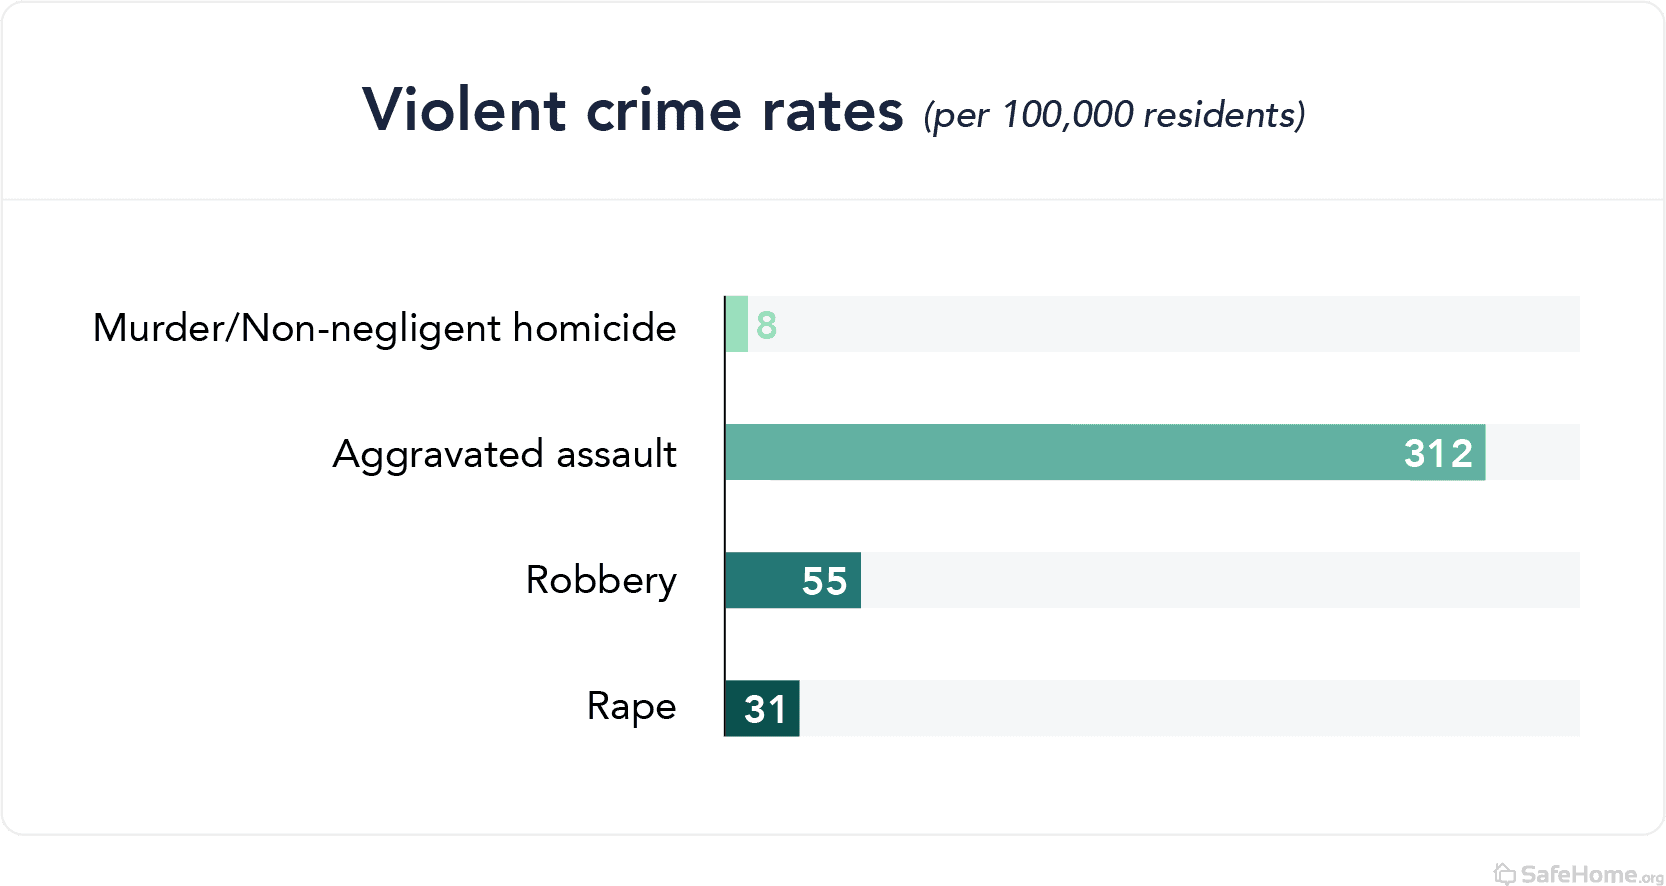 North Carolina violent crime rates